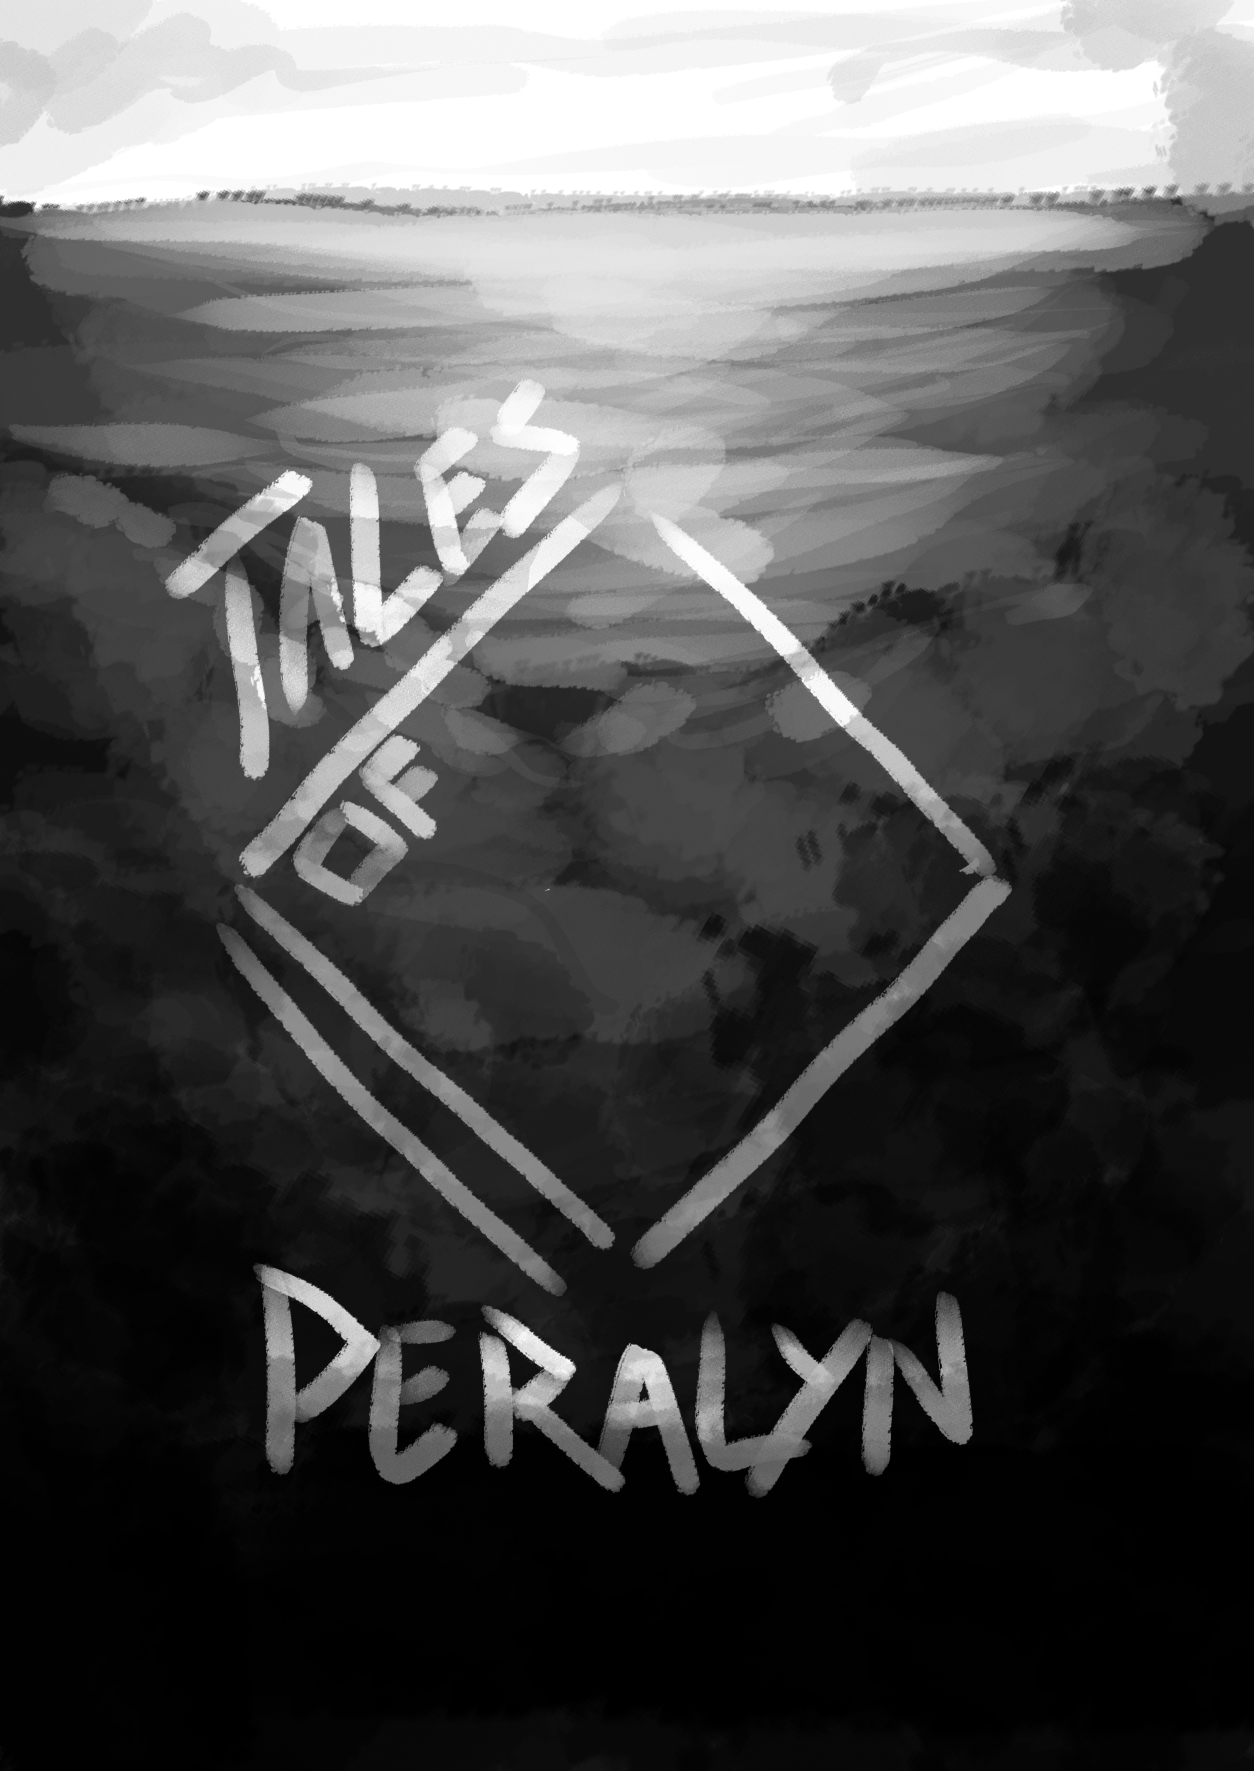 Tales of Peralyn